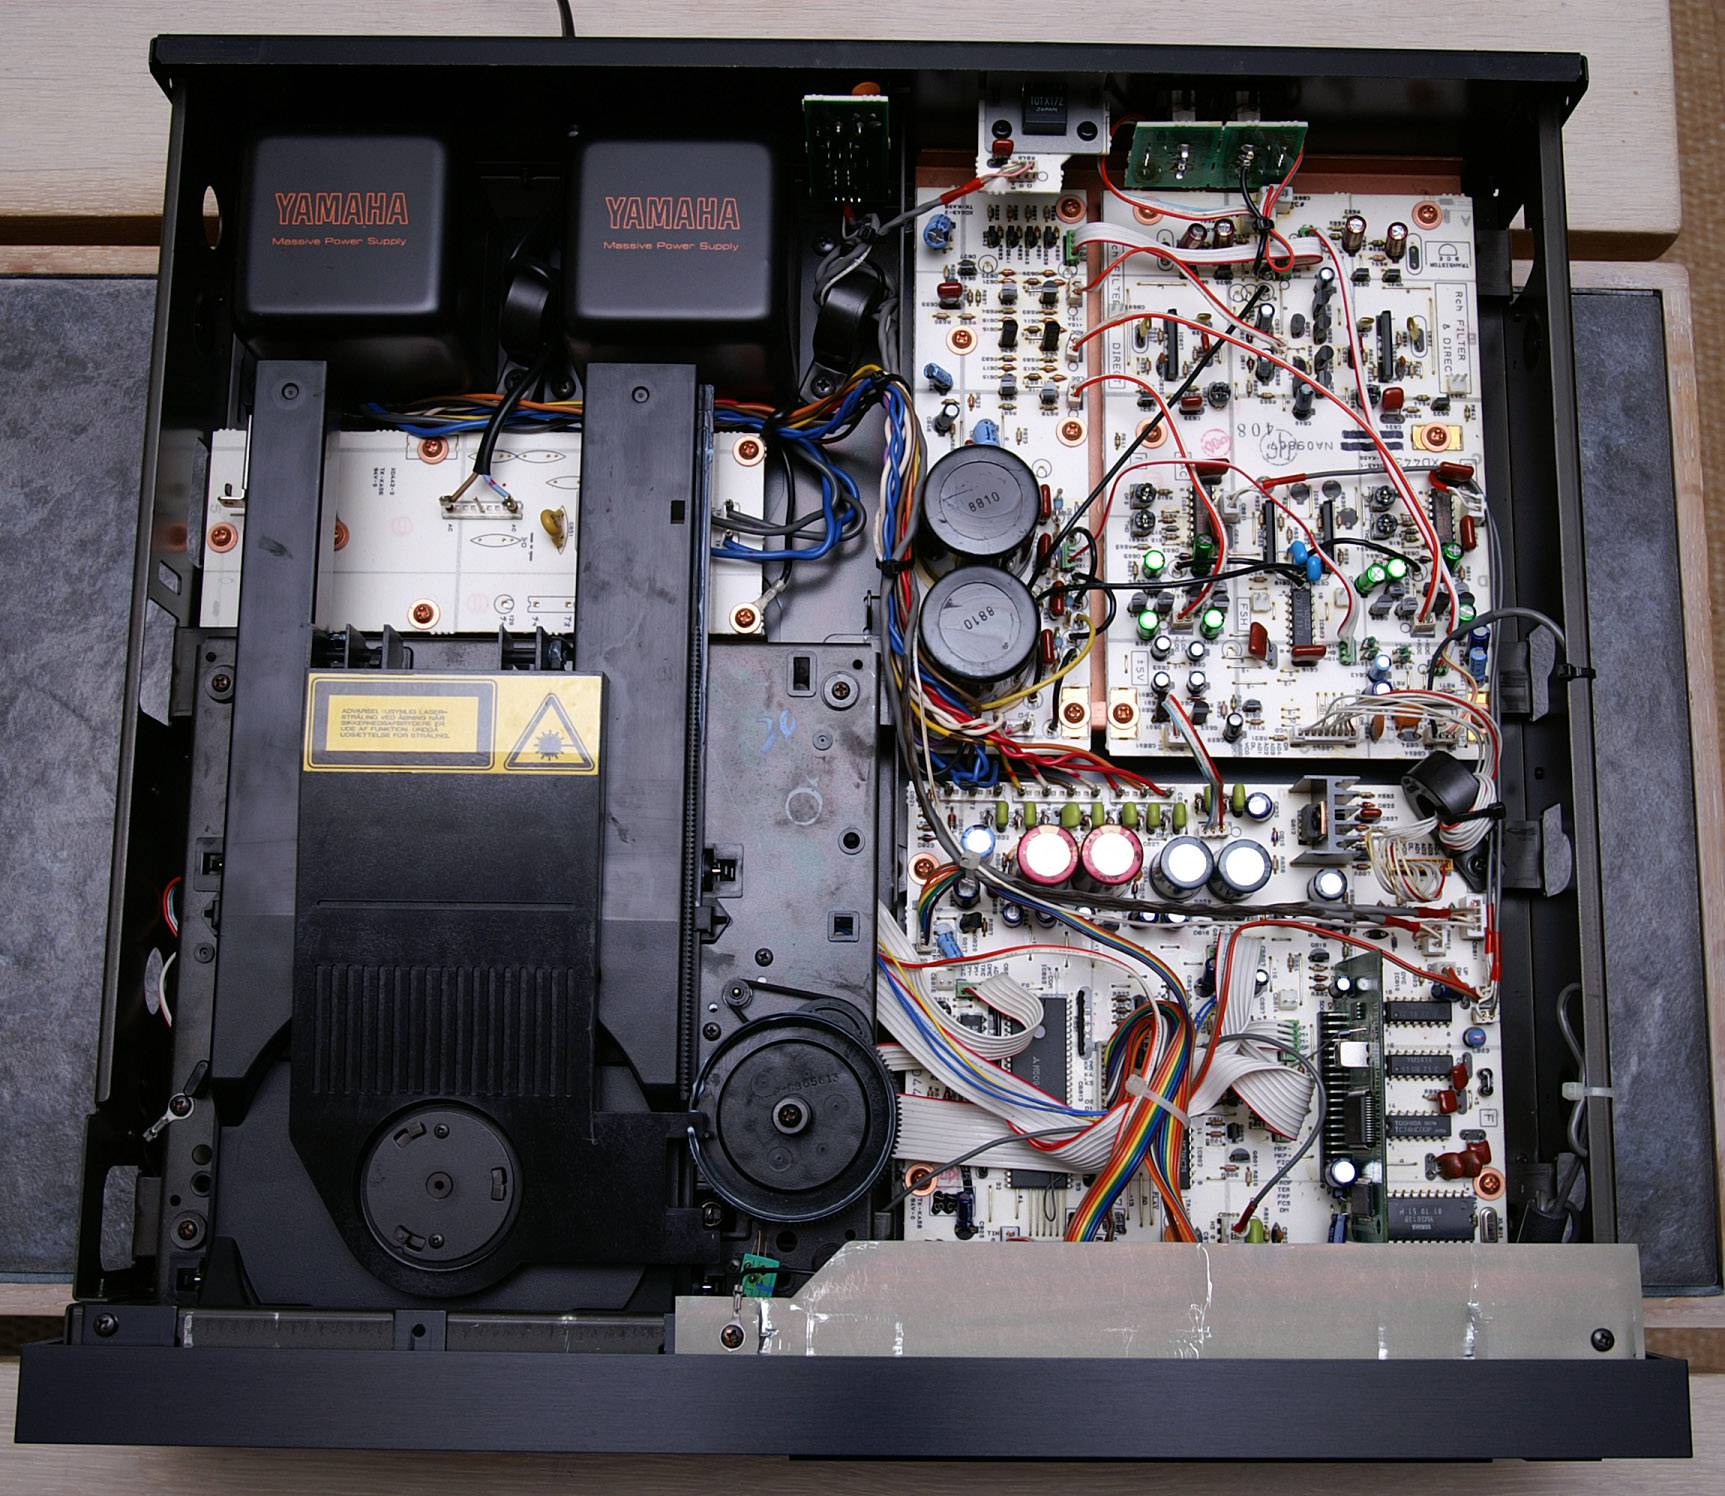 Yamaha CDX-1100